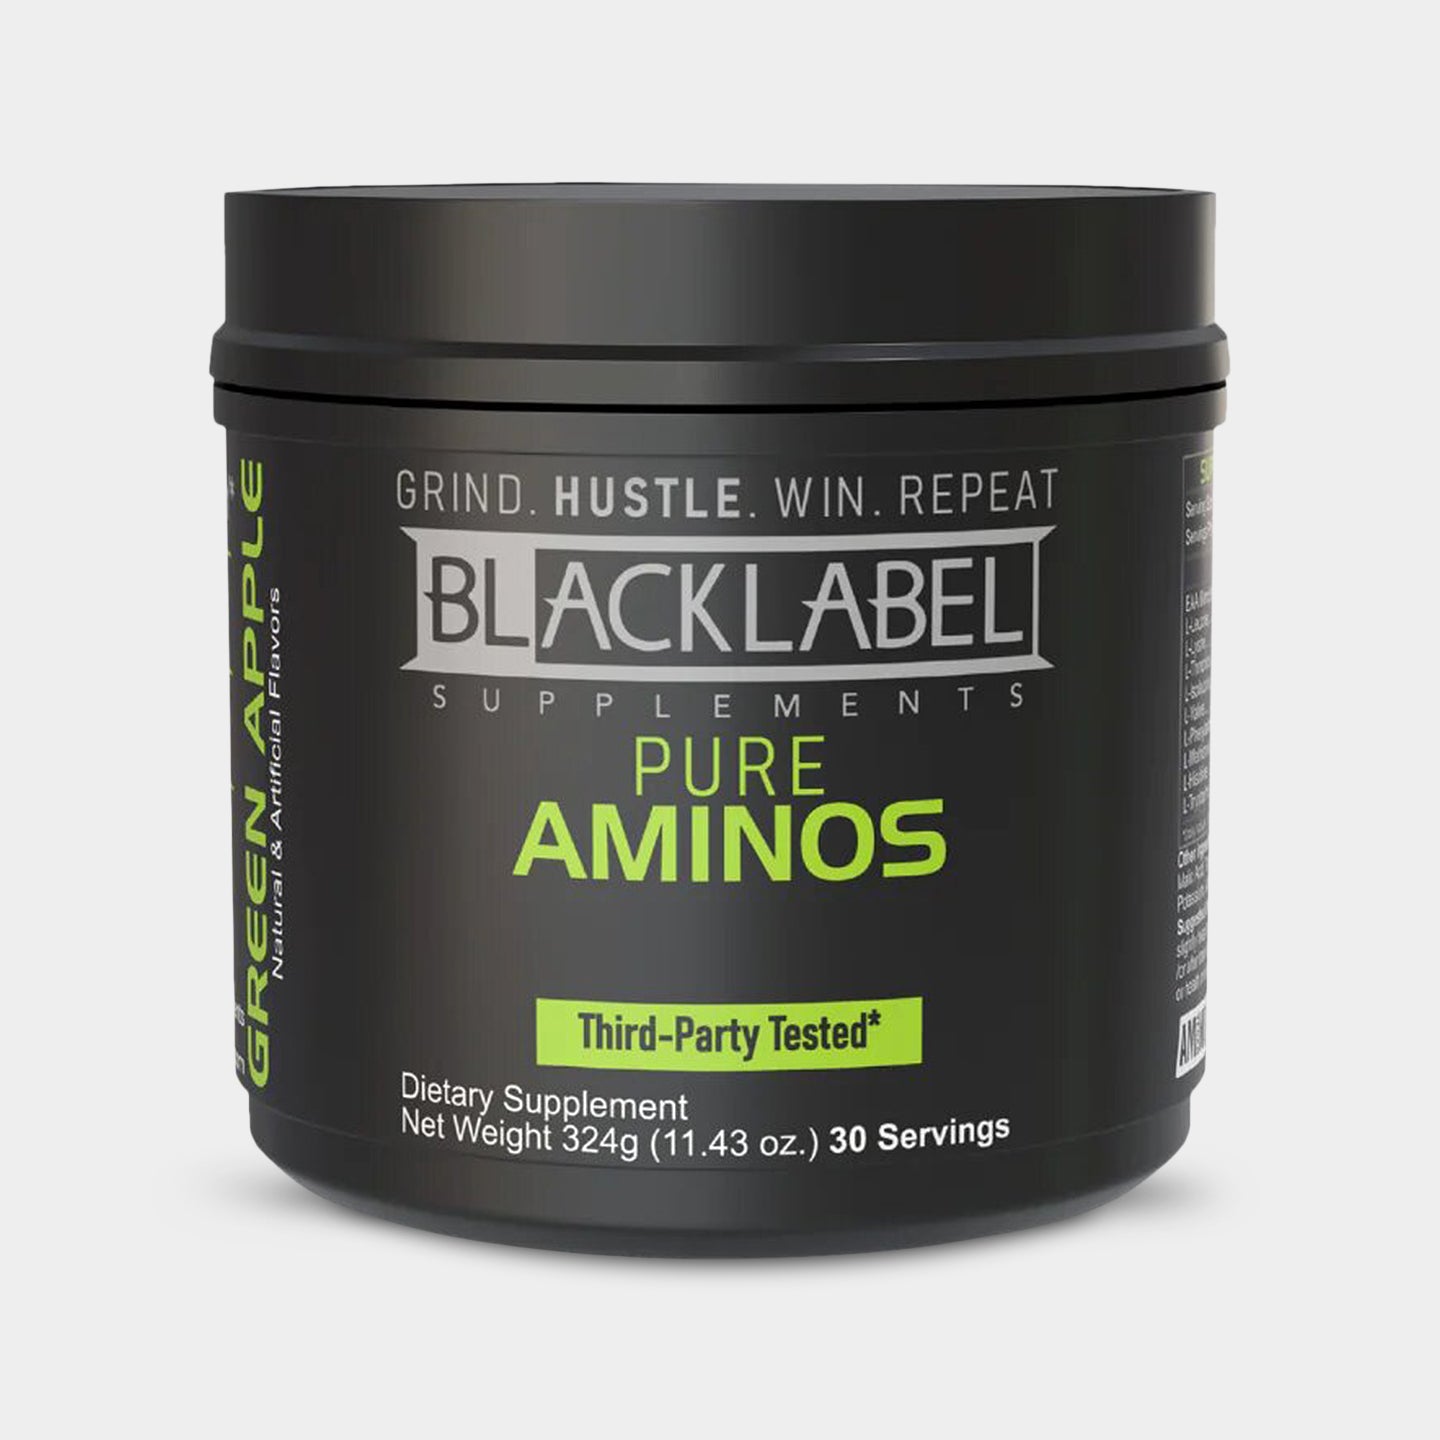 BLACKLABEL Supplements Pure Aminos